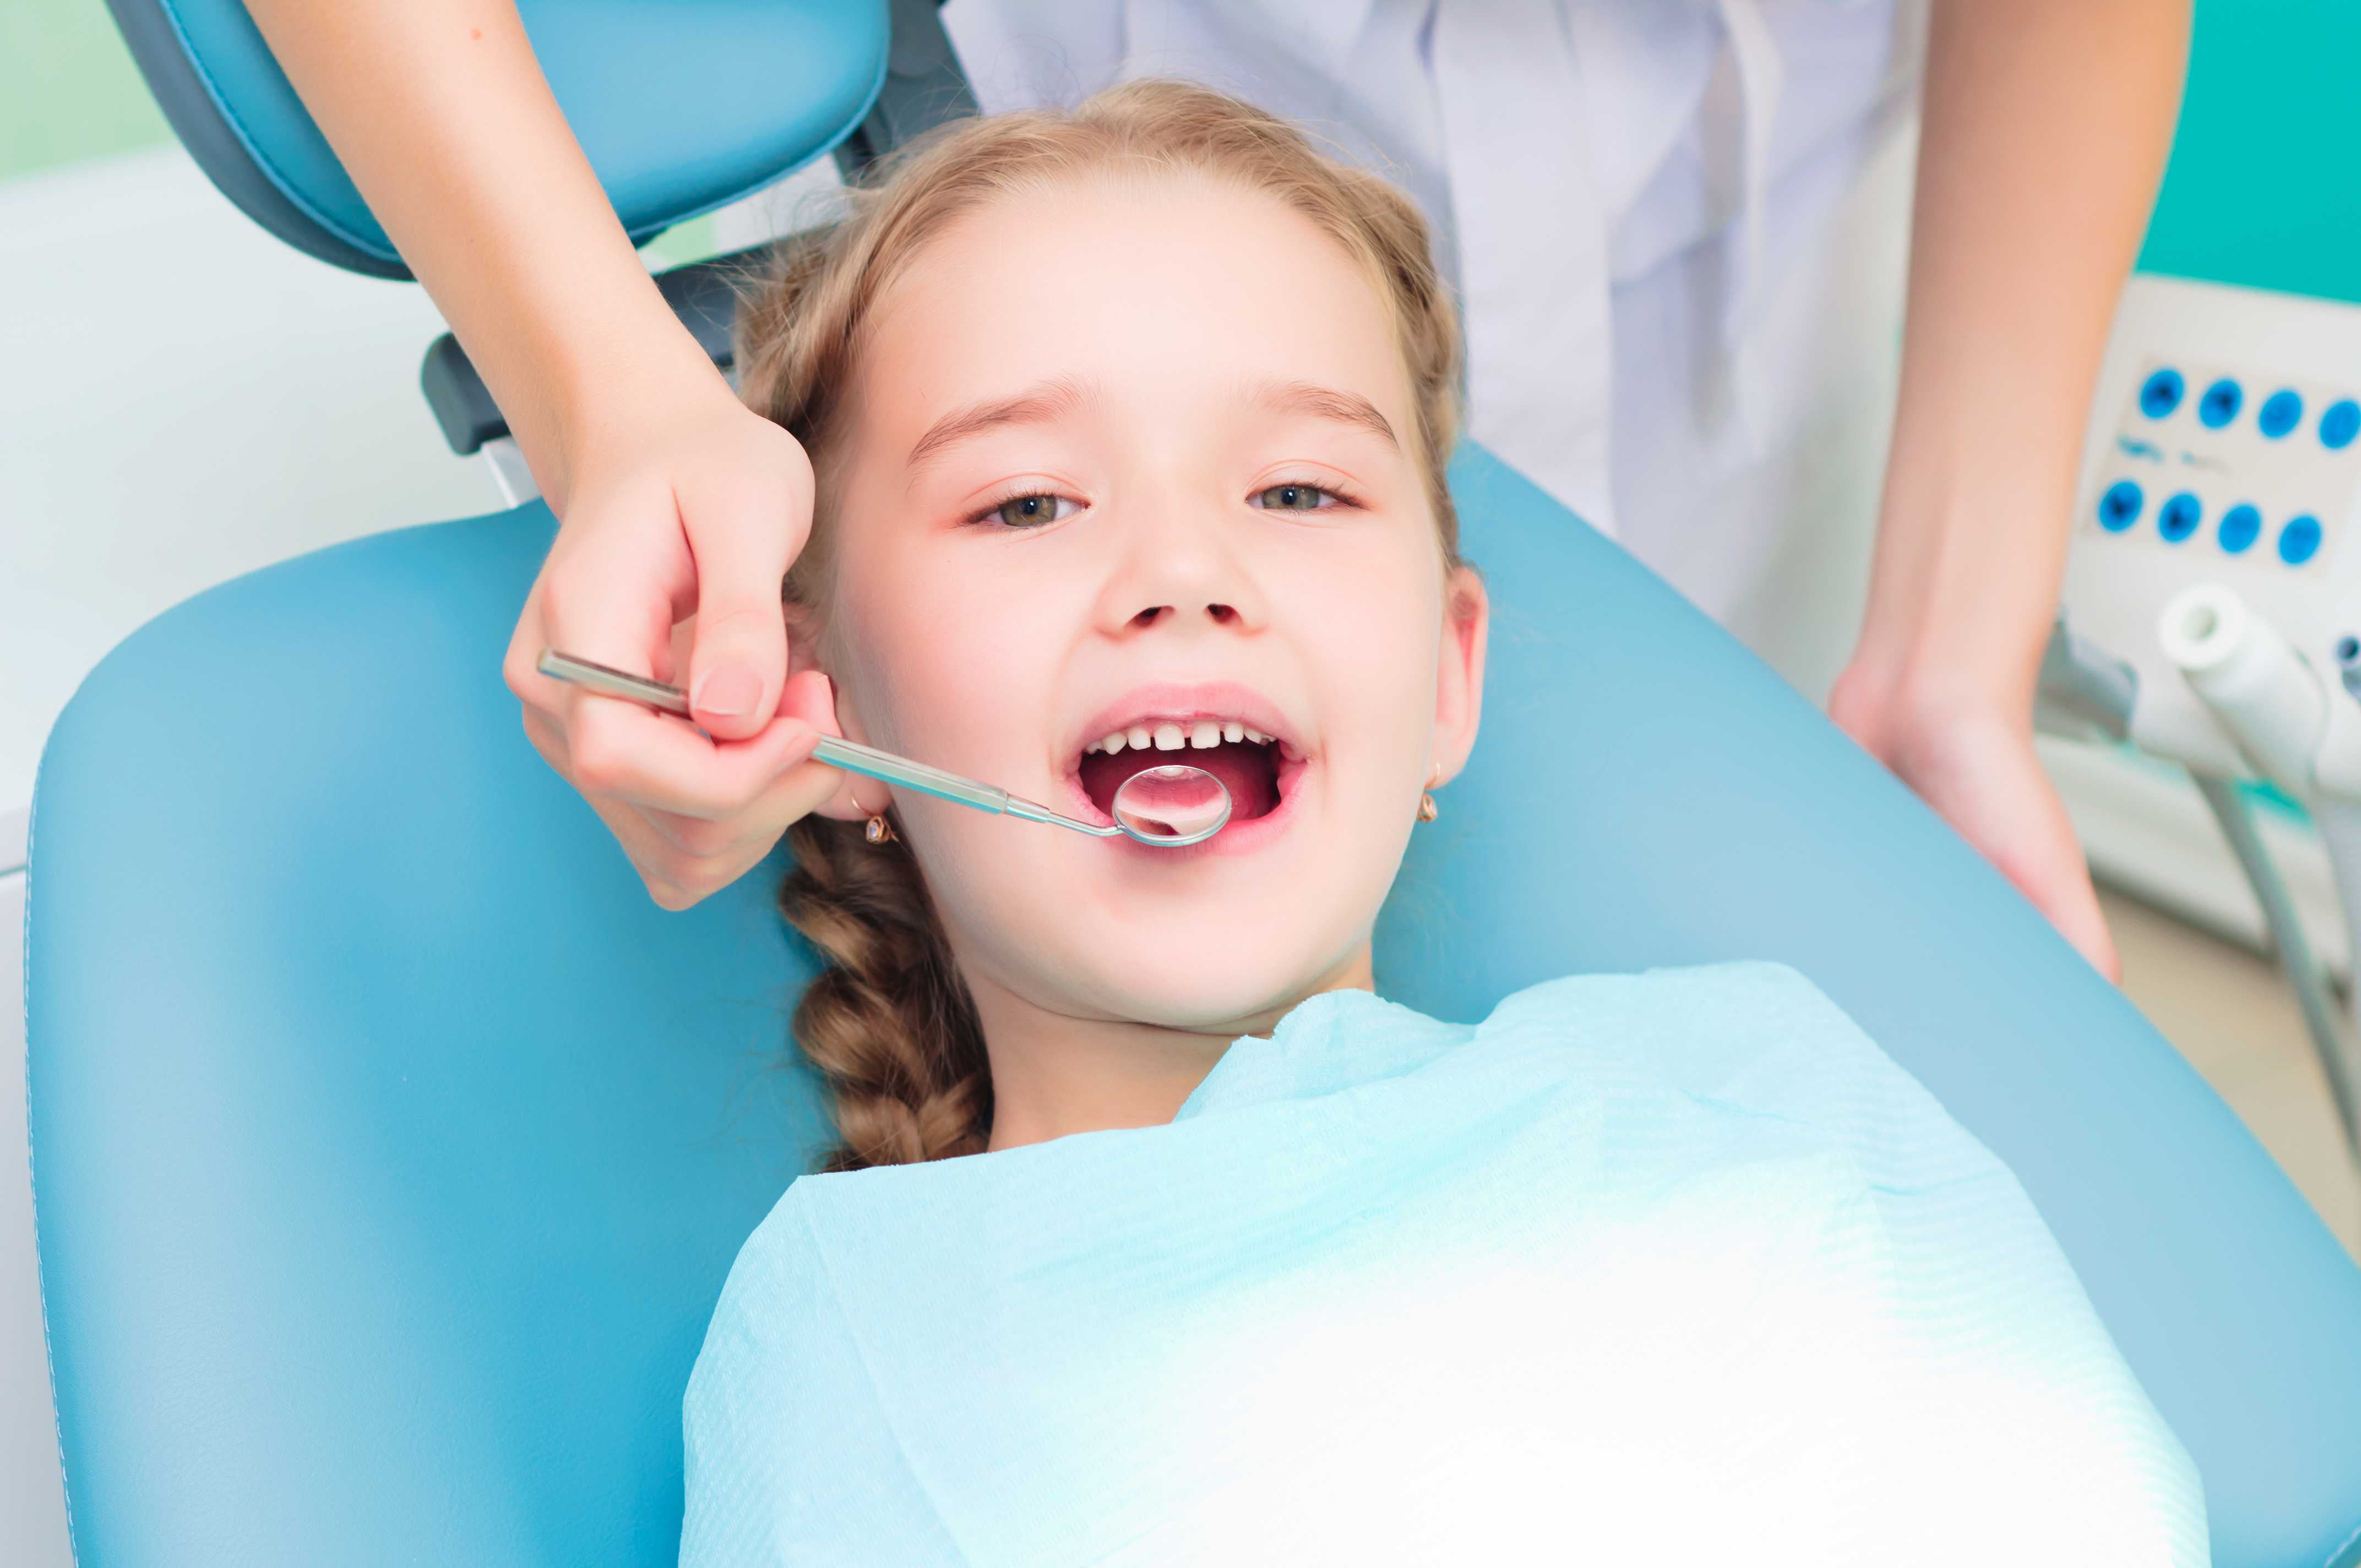 Обработка полости рта ребенку. Гигиена зубов для детей. Ребенок у стоматолога. Гигиена зубов и полости рта для детей. Профессиональная гигиена зубов у детей.